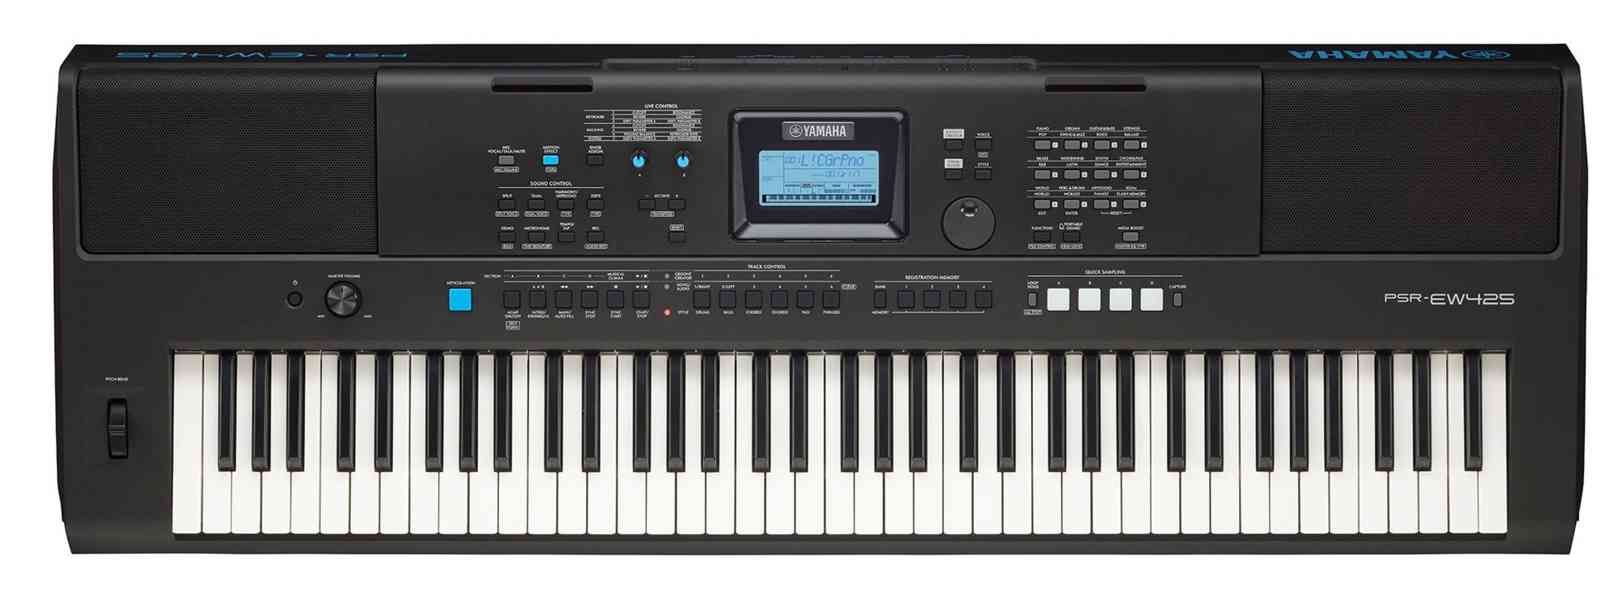 Keyboard Yamaha PSR-EW425 (nový) - foto 4